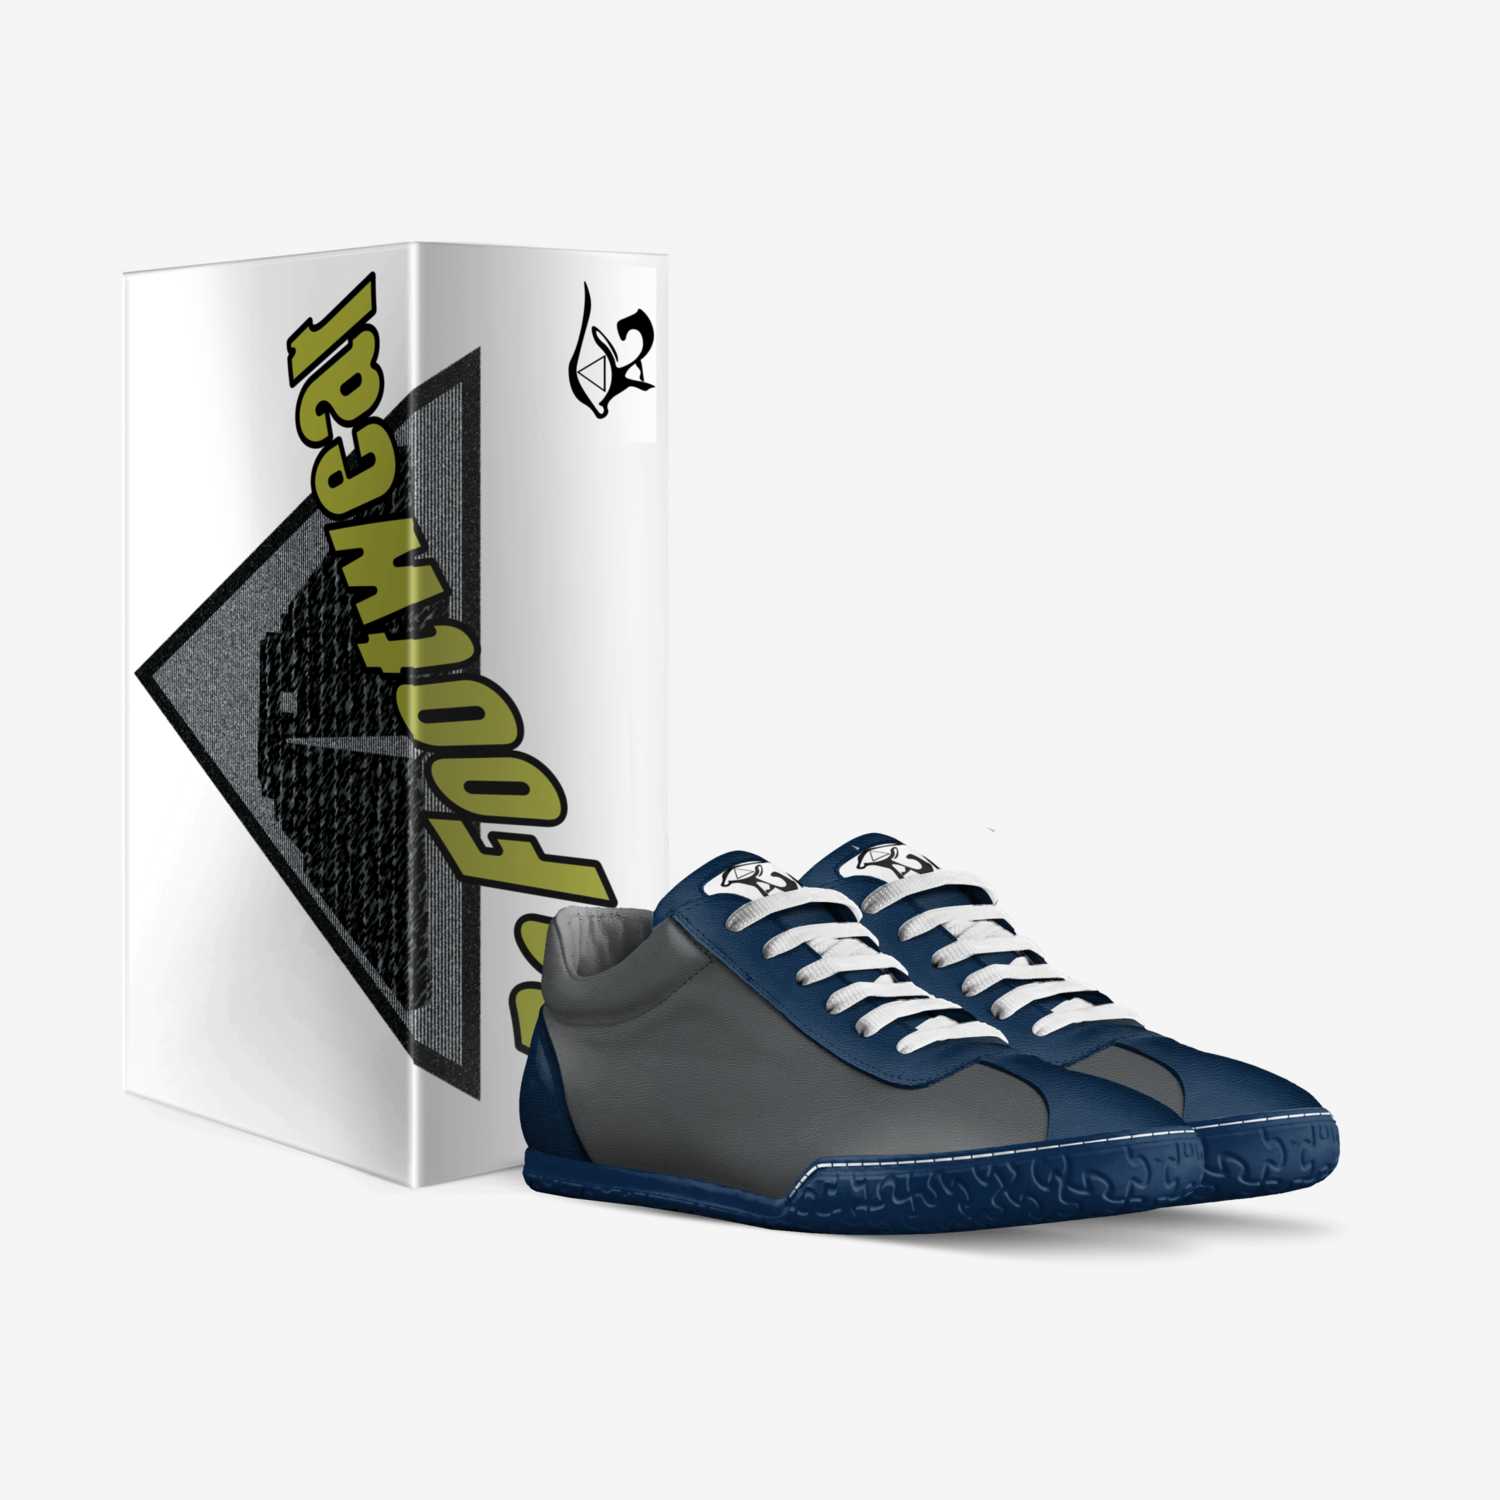 Ra Footwear custom made in Italy shoes by Derek Larsh | Box view